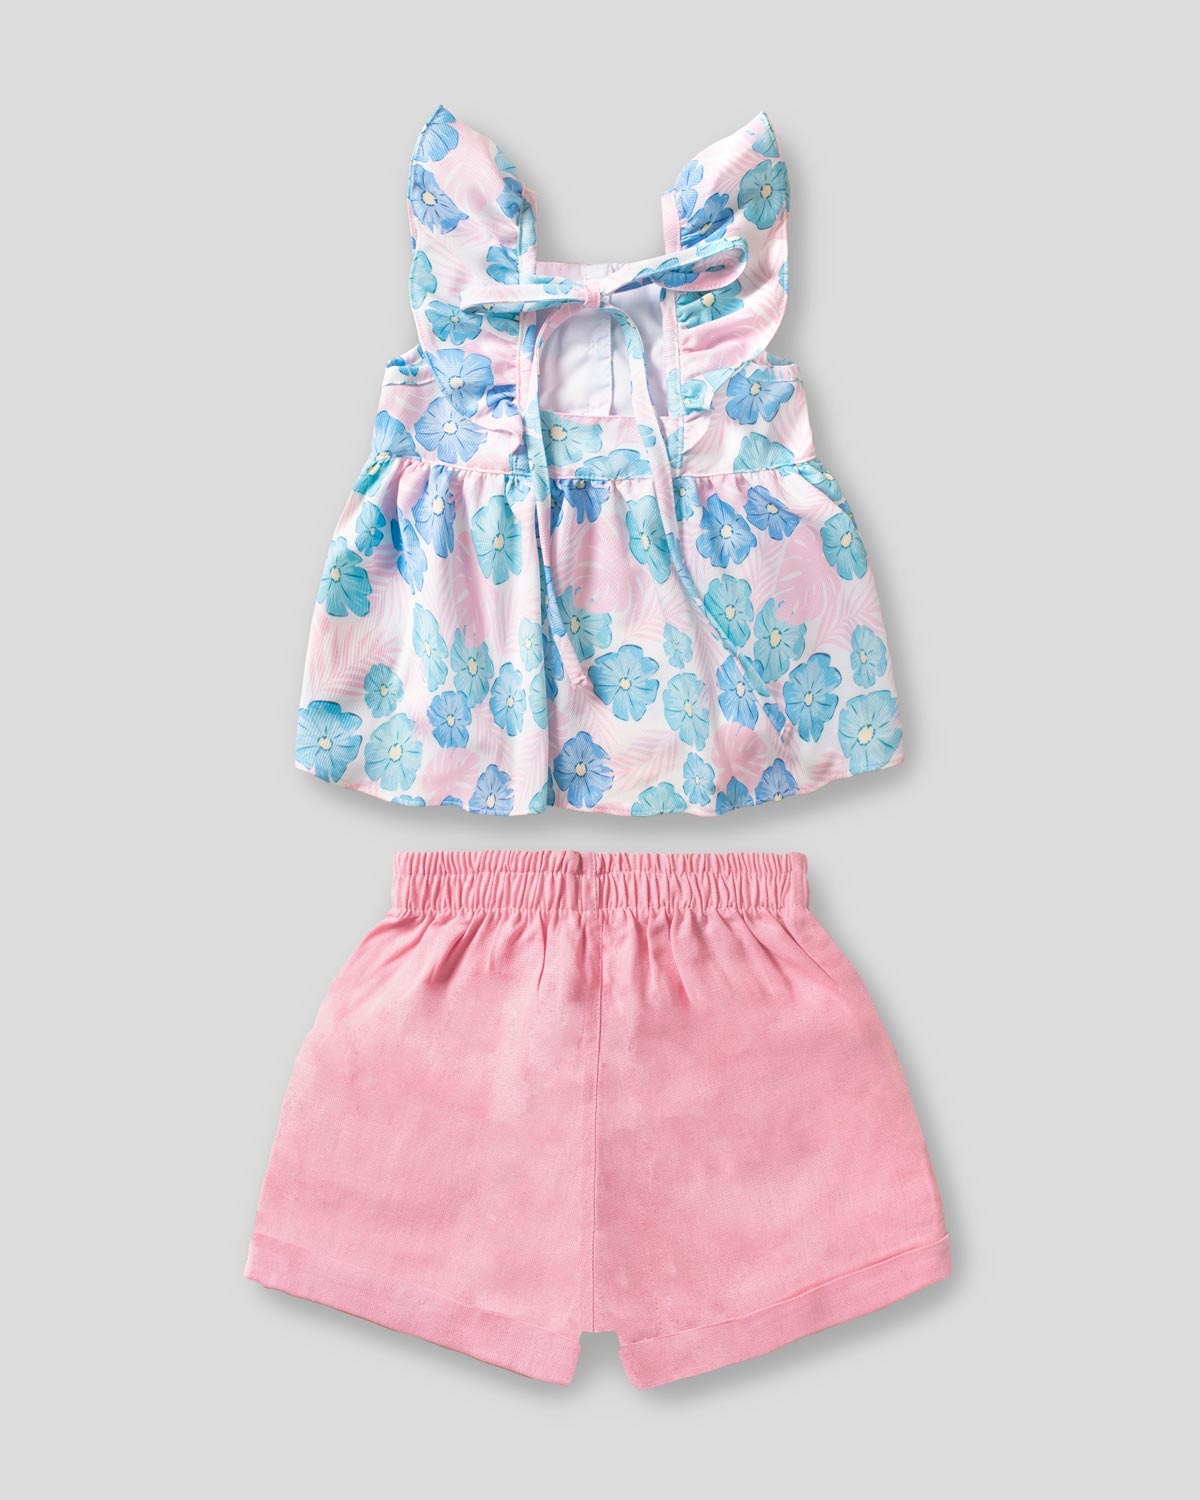 Conjunto blusa de flores con boleros en hombro y short rosa para niña